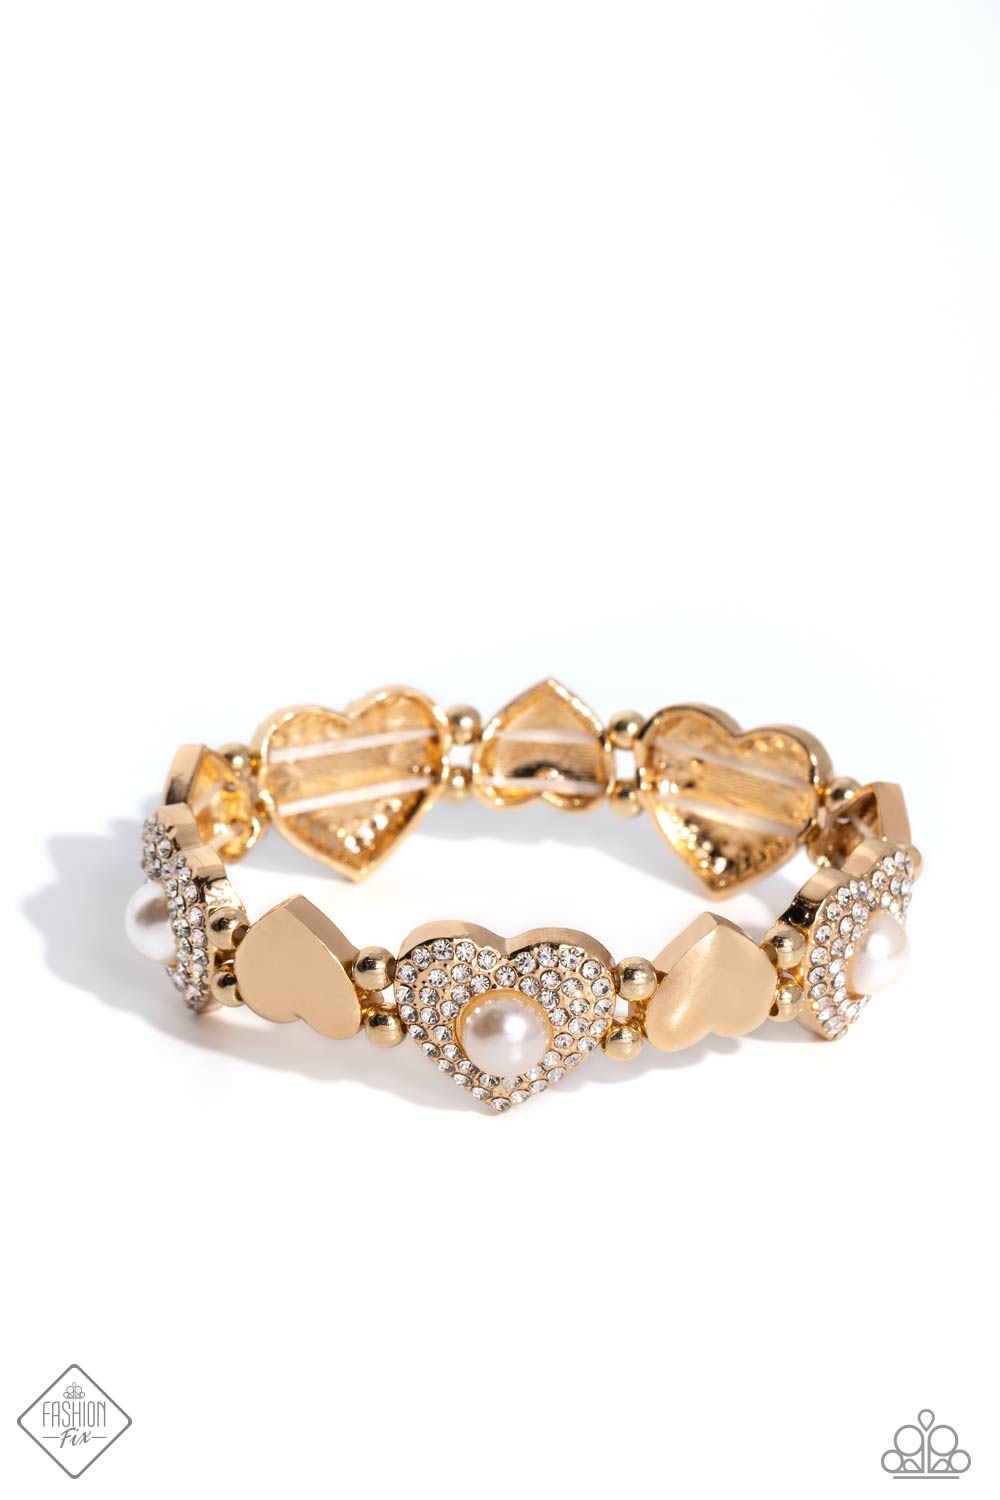 Heartfelt Heirloom Gold Bracelet